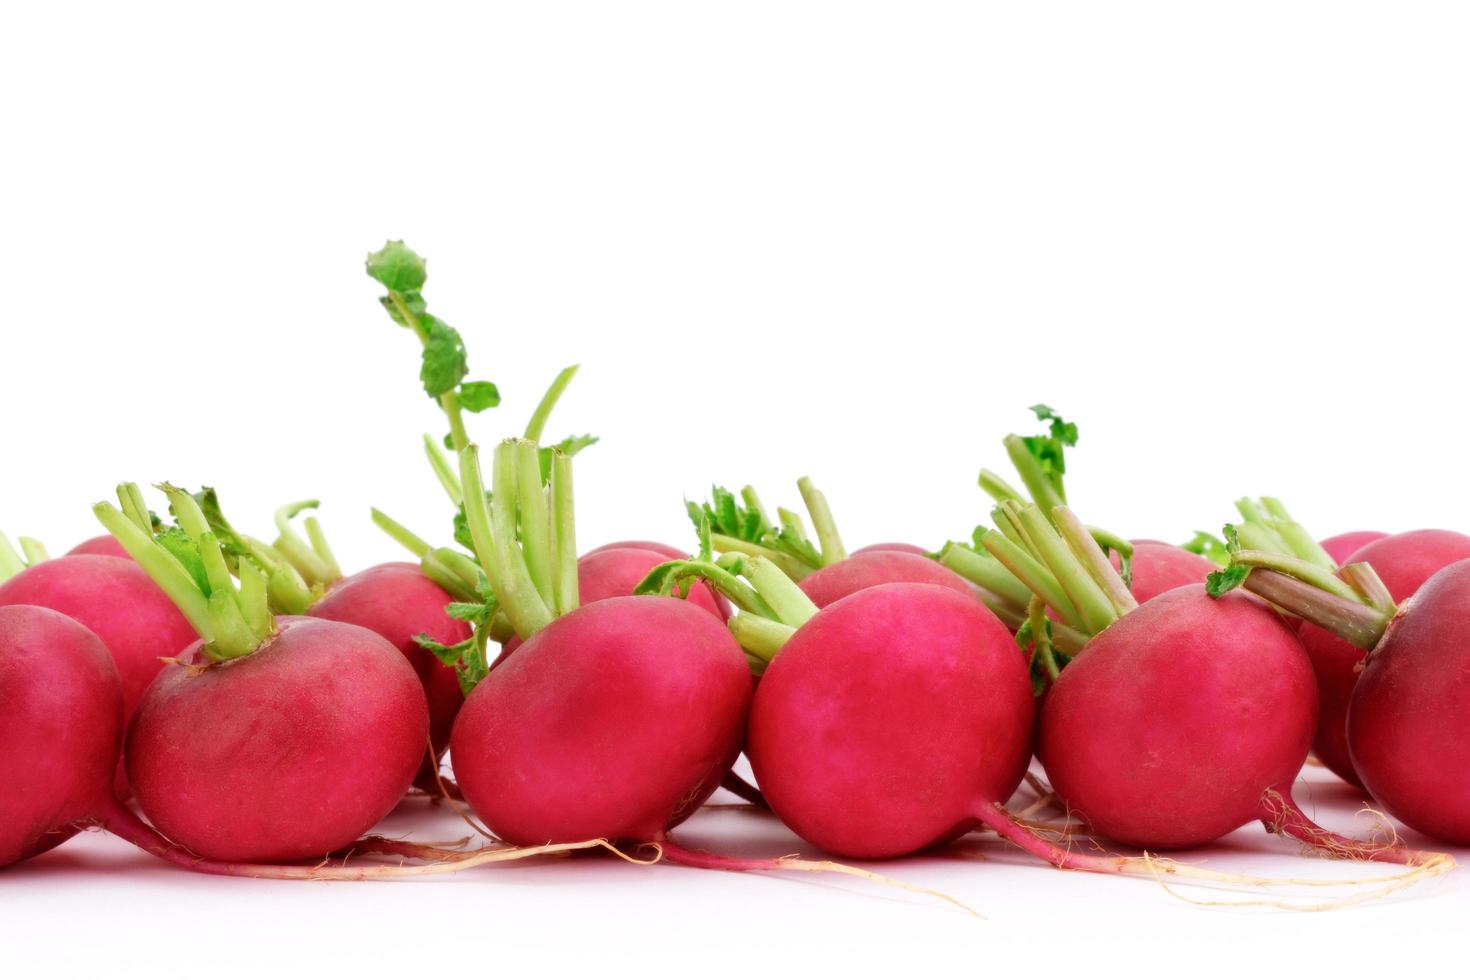 rabanete vermelho ou roxo, mistura de salada orgânica saudável comida natural isolada no fundo branco foto